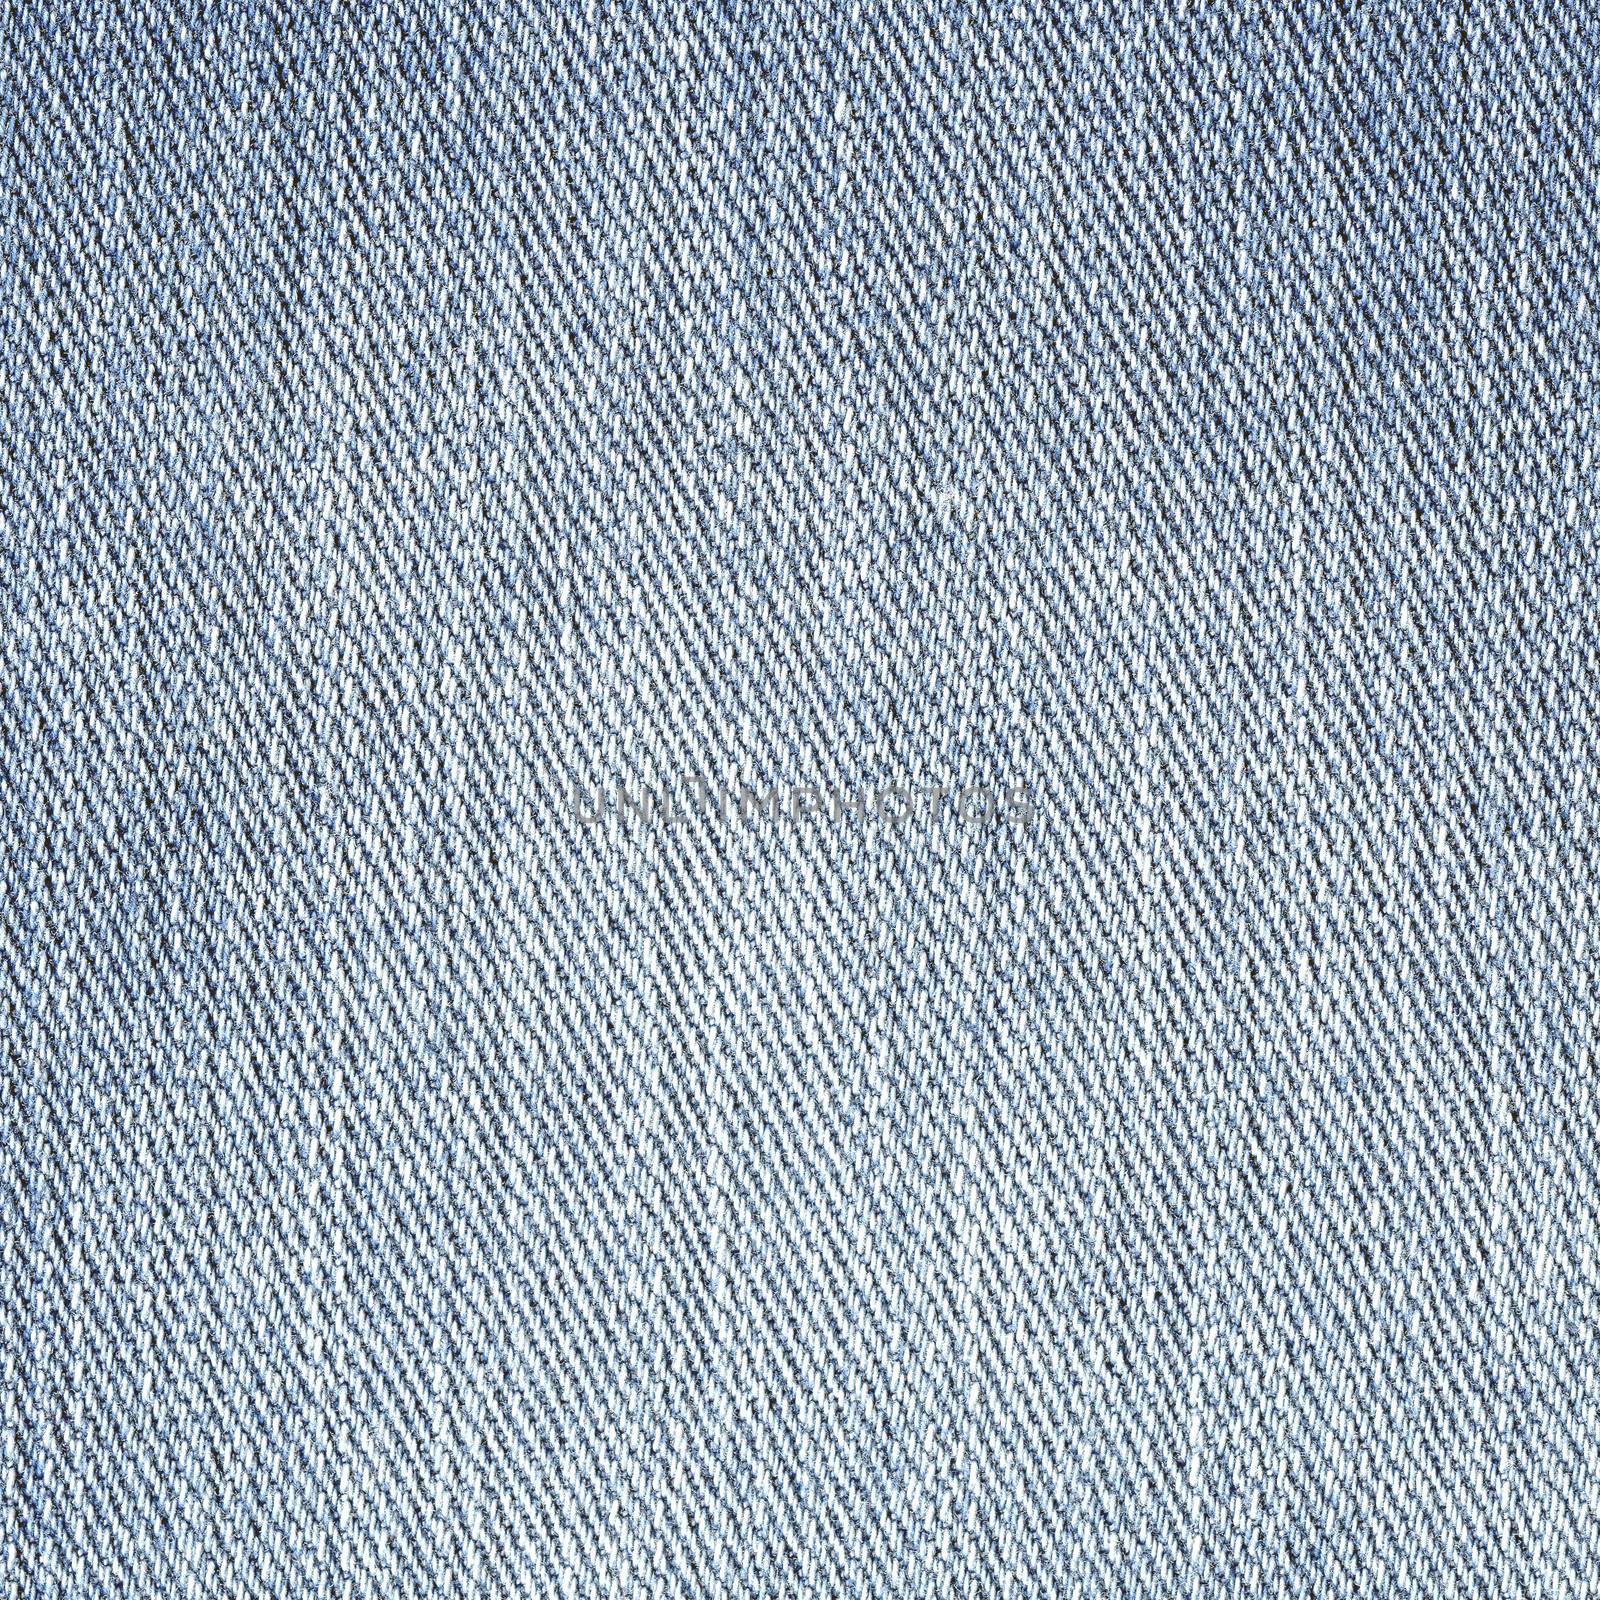 Jeans Denim Texture. Light Gray Blue Color by ESSL